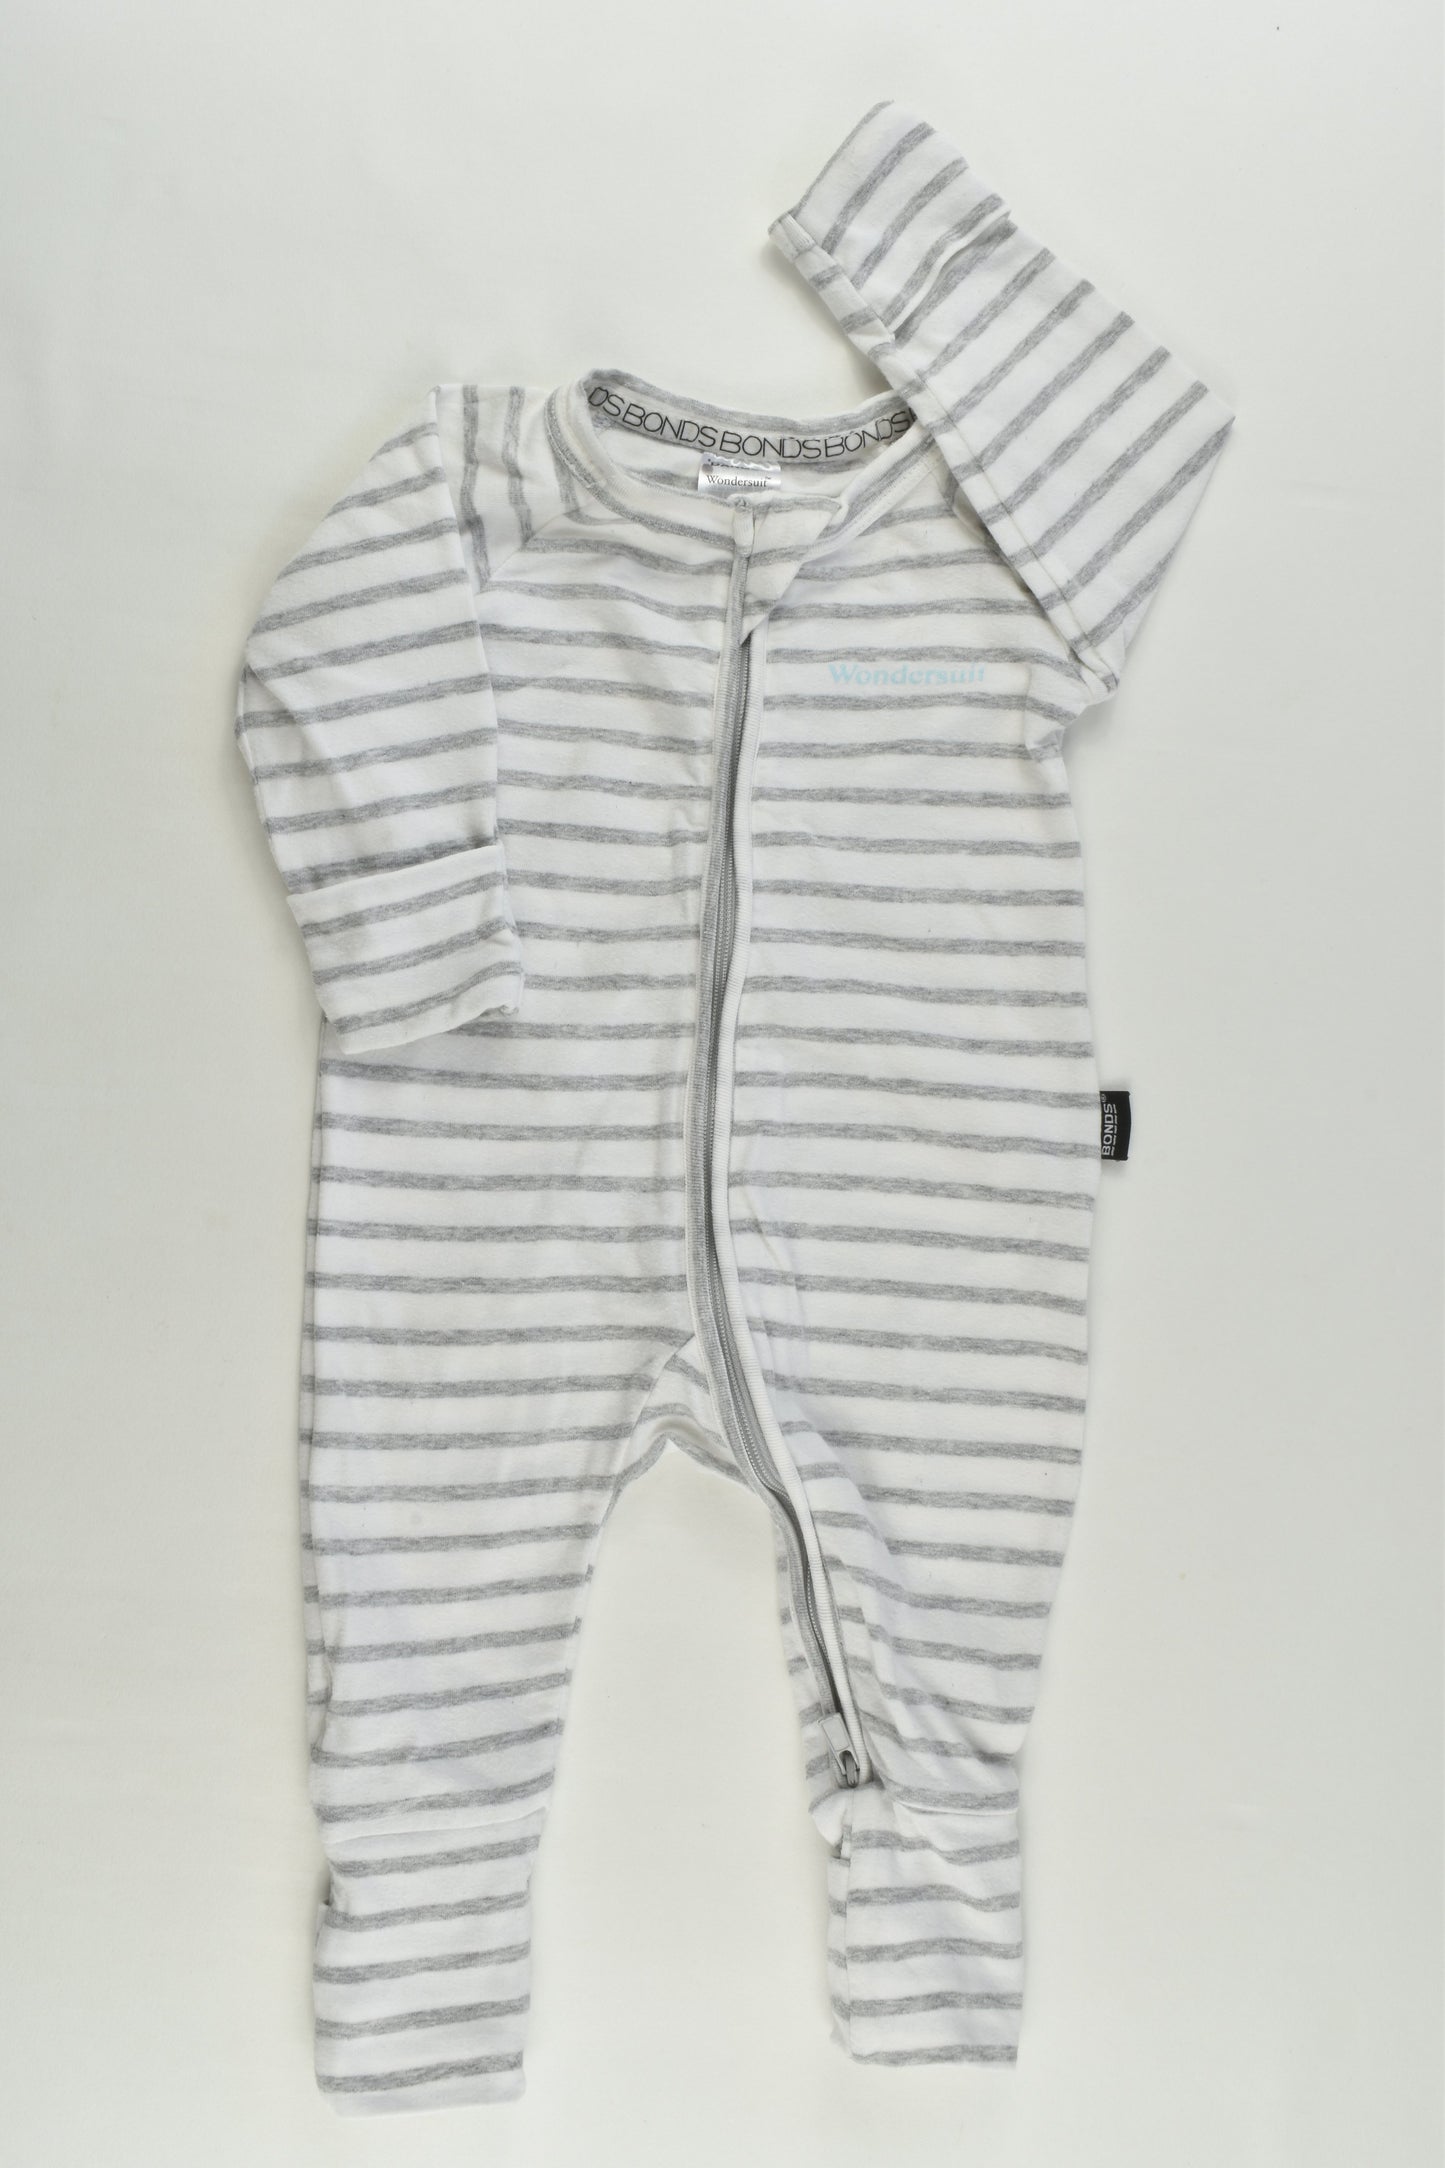 Bonds Size 000 (0-3 months) Striped Wondersuit